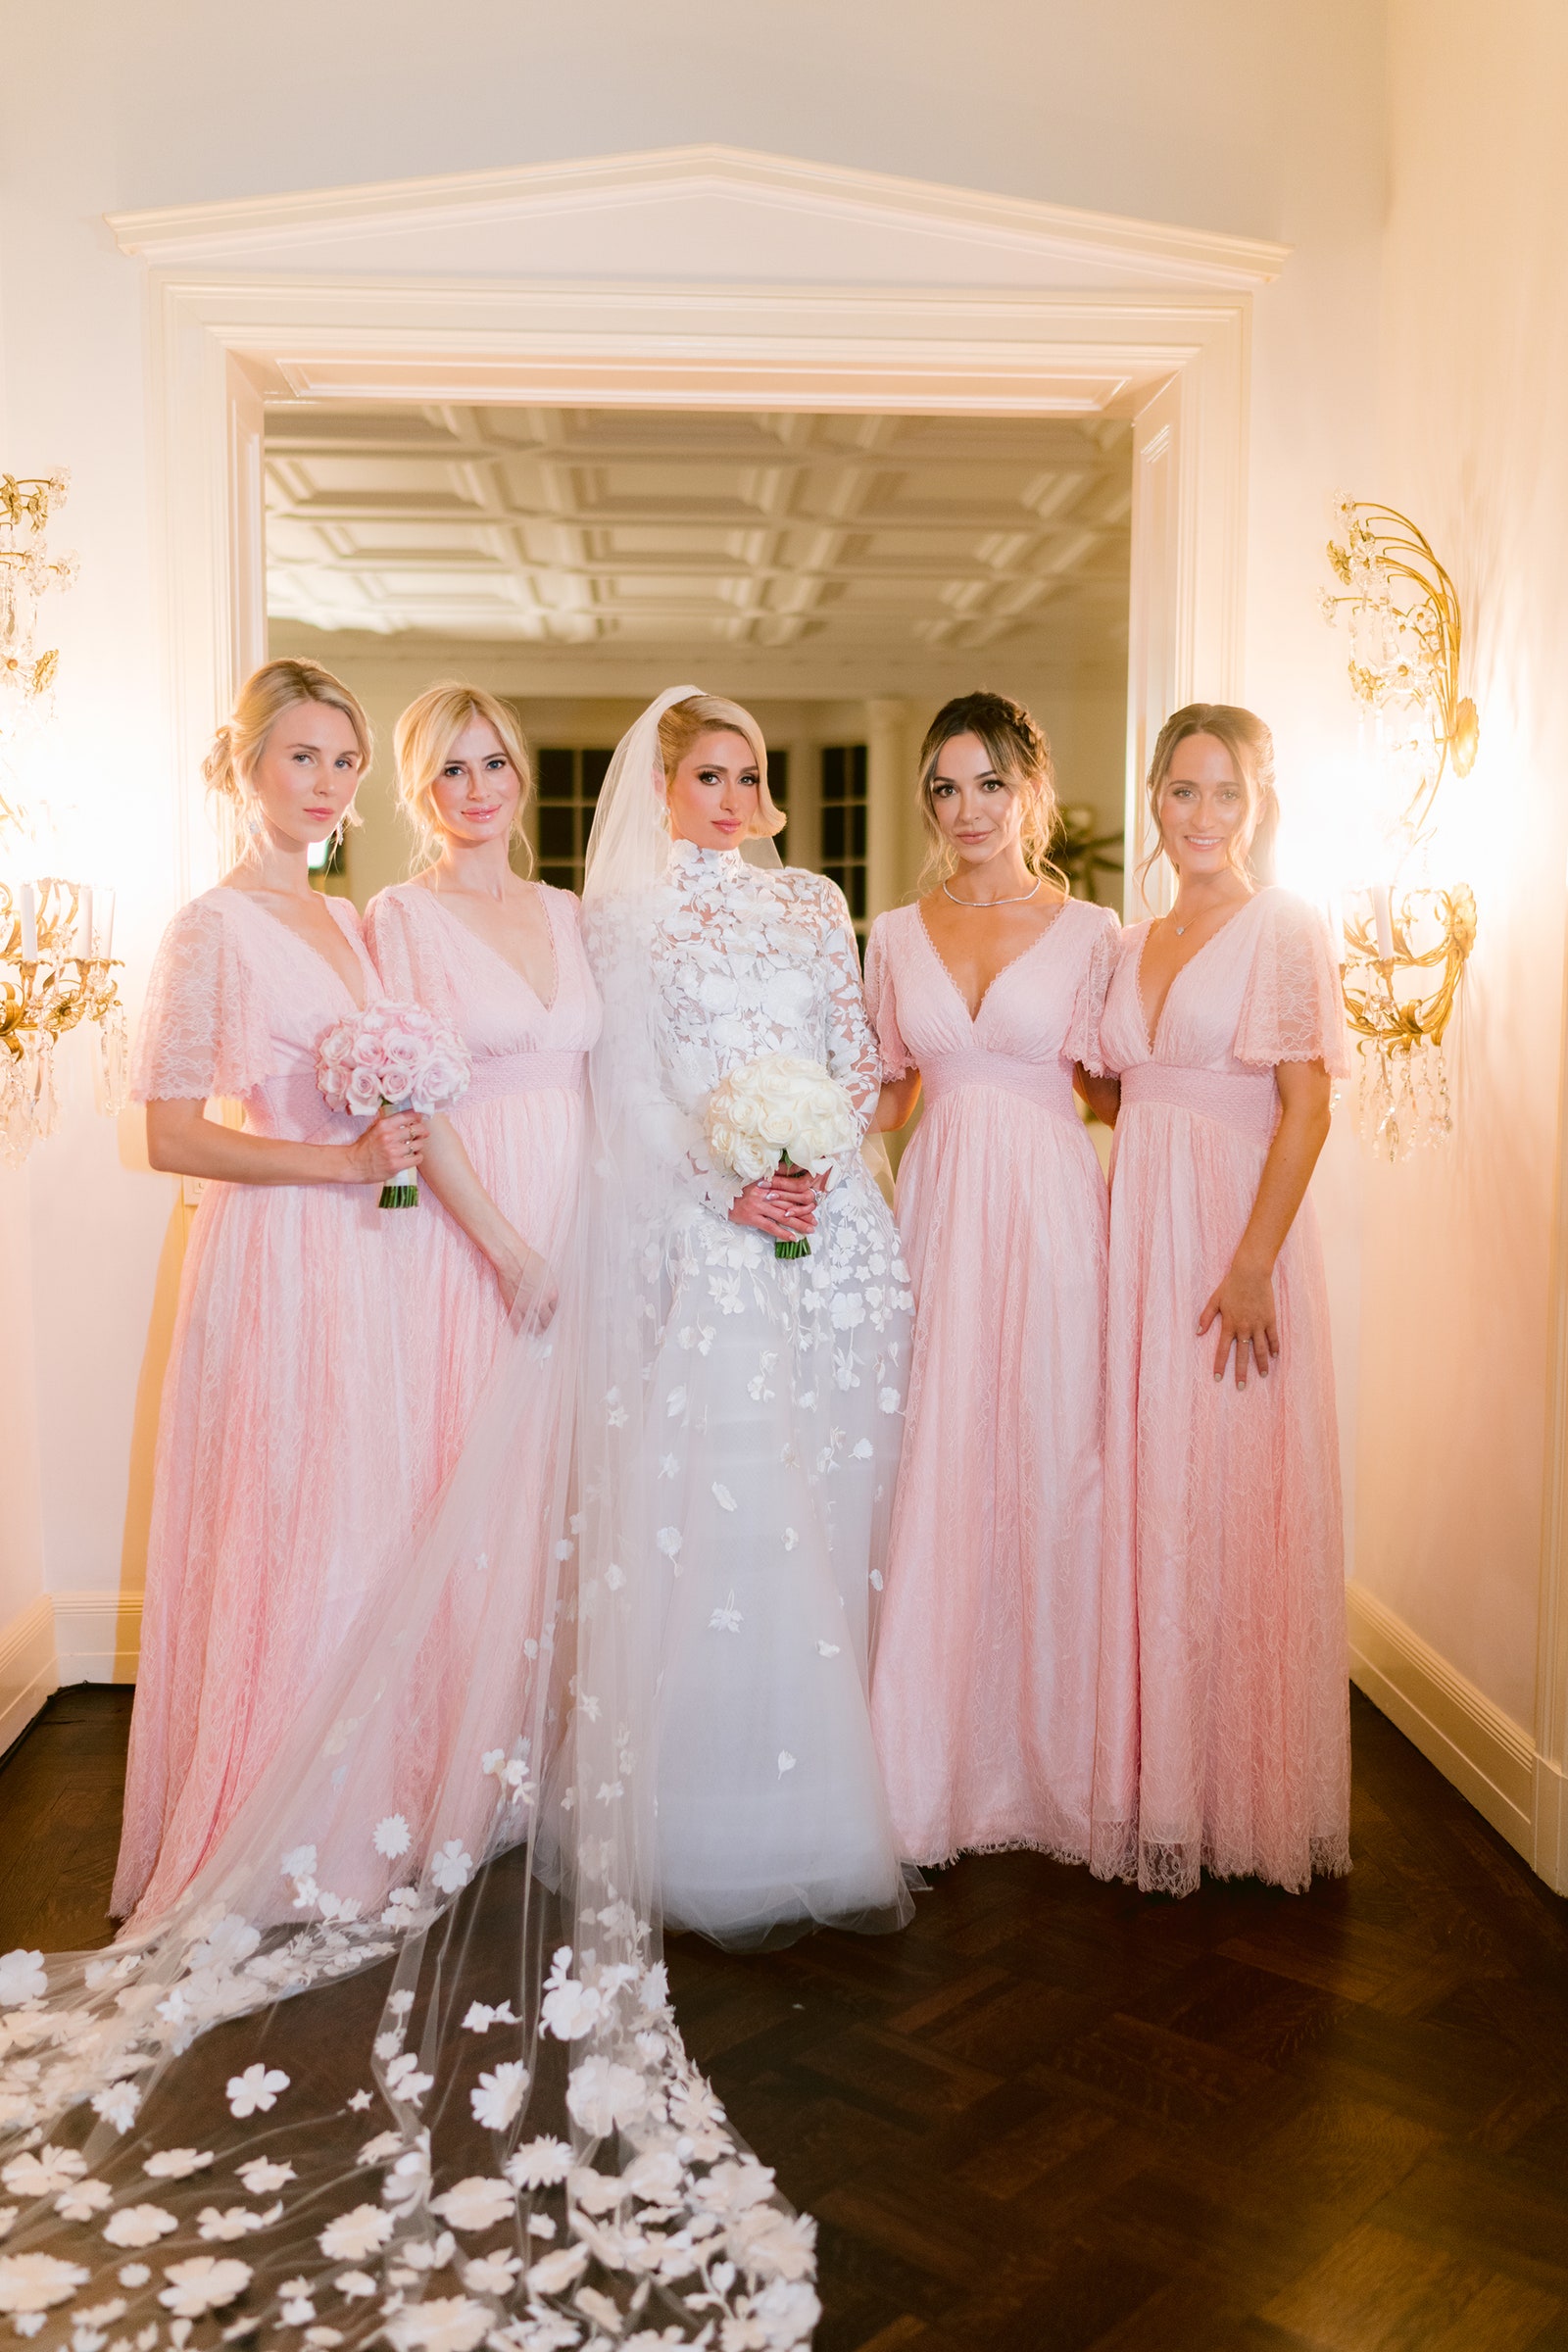 Cận cảnh đám cưới xa hoa, kéo dài suốt 3 ngày ở biệt thự triệu đô của Paris Hilton - Ảnh 4